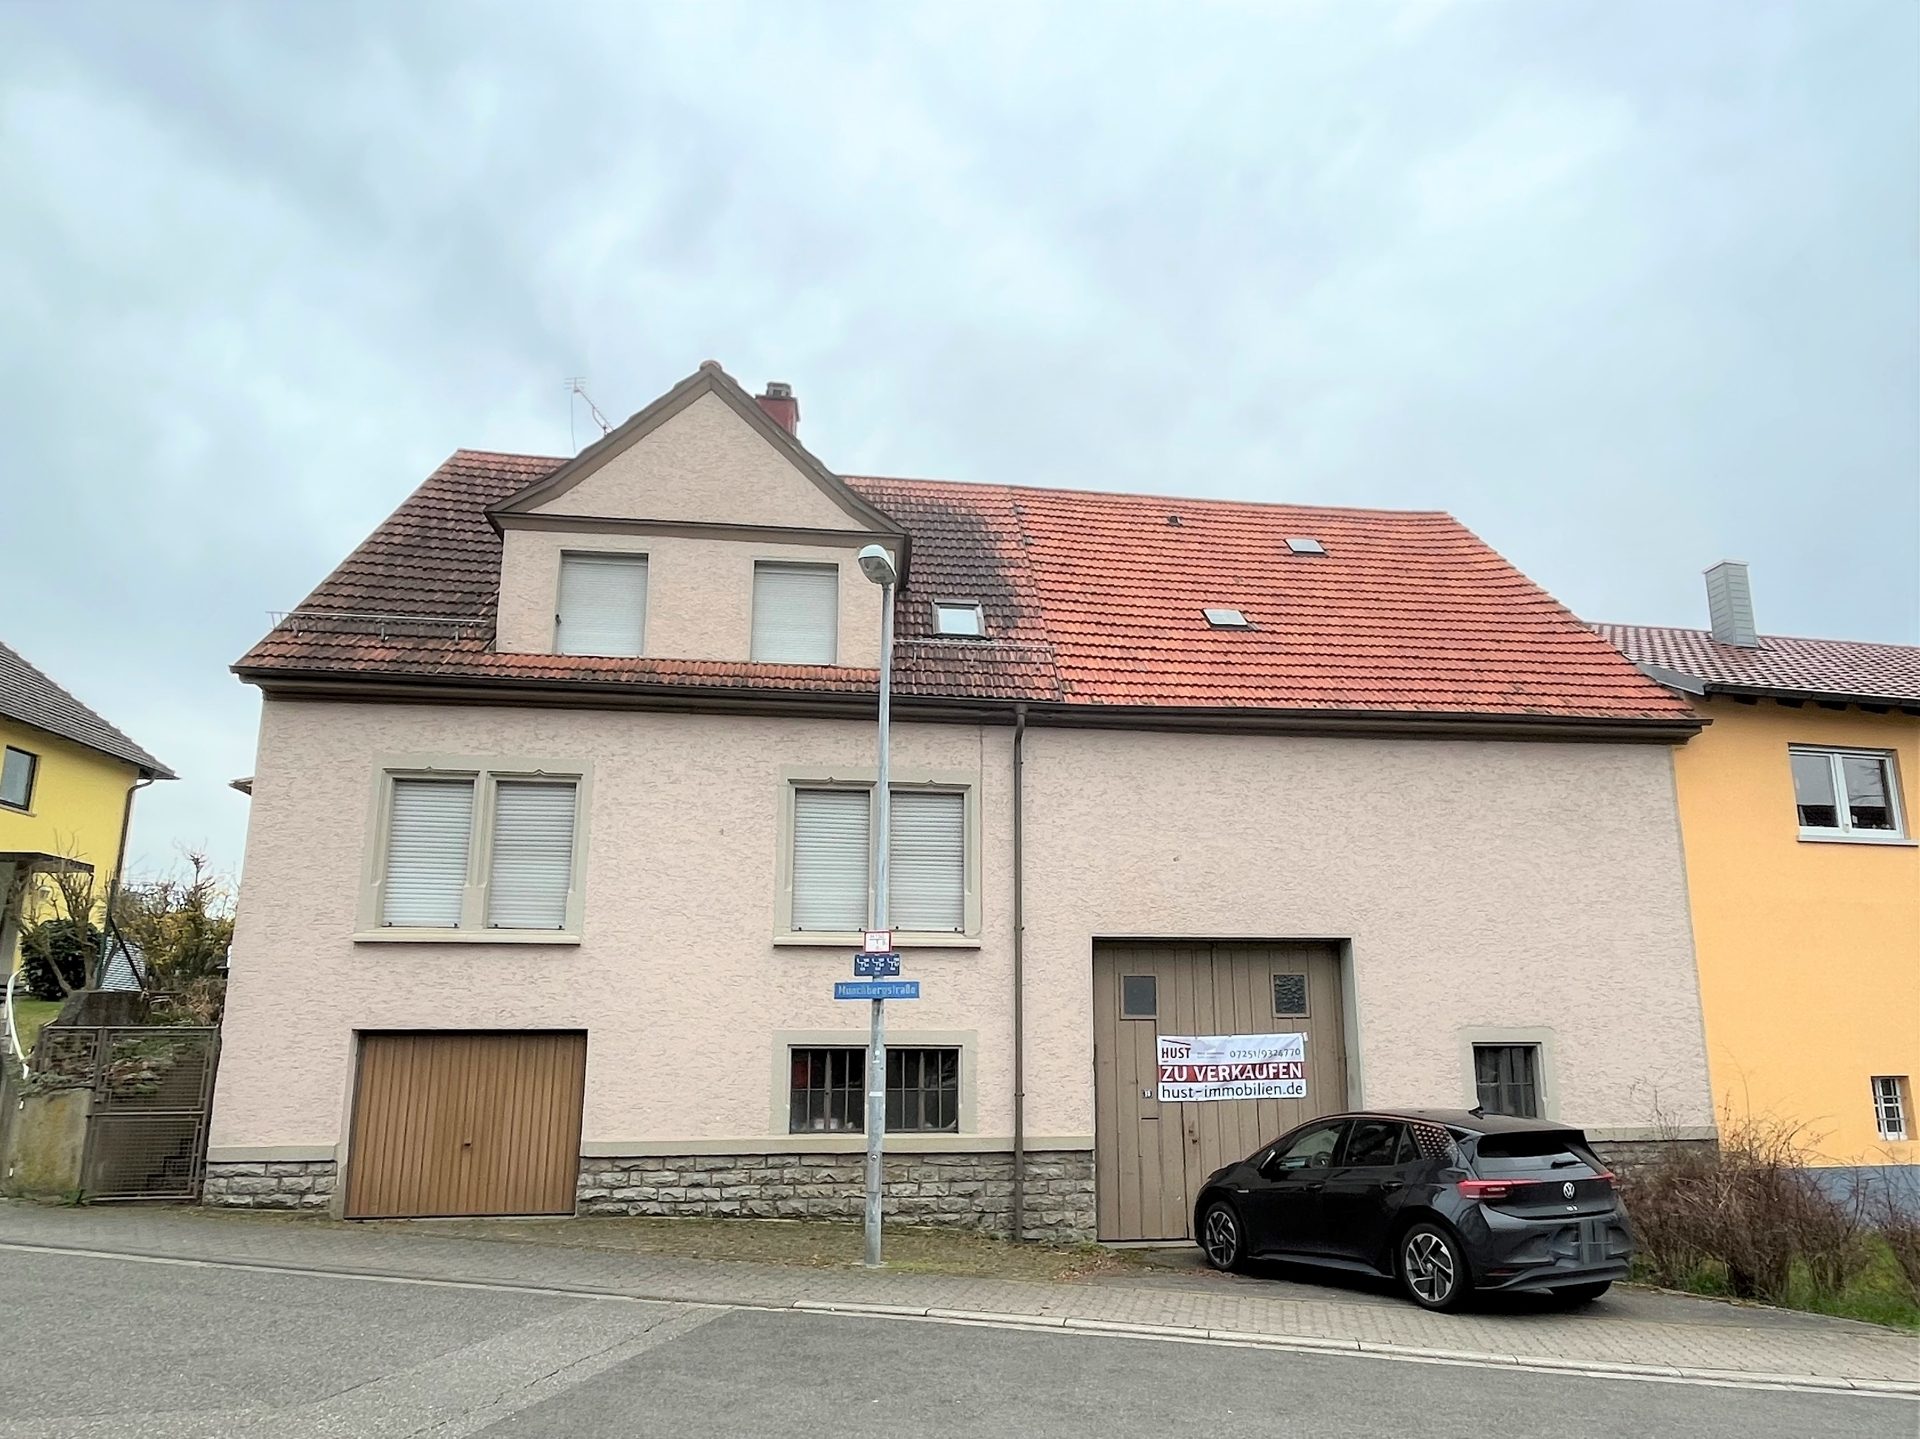 HUST Immobilien GmbH & Co. KG - Immobilienangebot - Bruchsal / Heidelsheim - Alle - Bauernhaus mit Garage, Scheune und Stallungen in Heidelsheim Kreis Bruchsal sucht neuen Eigentümer